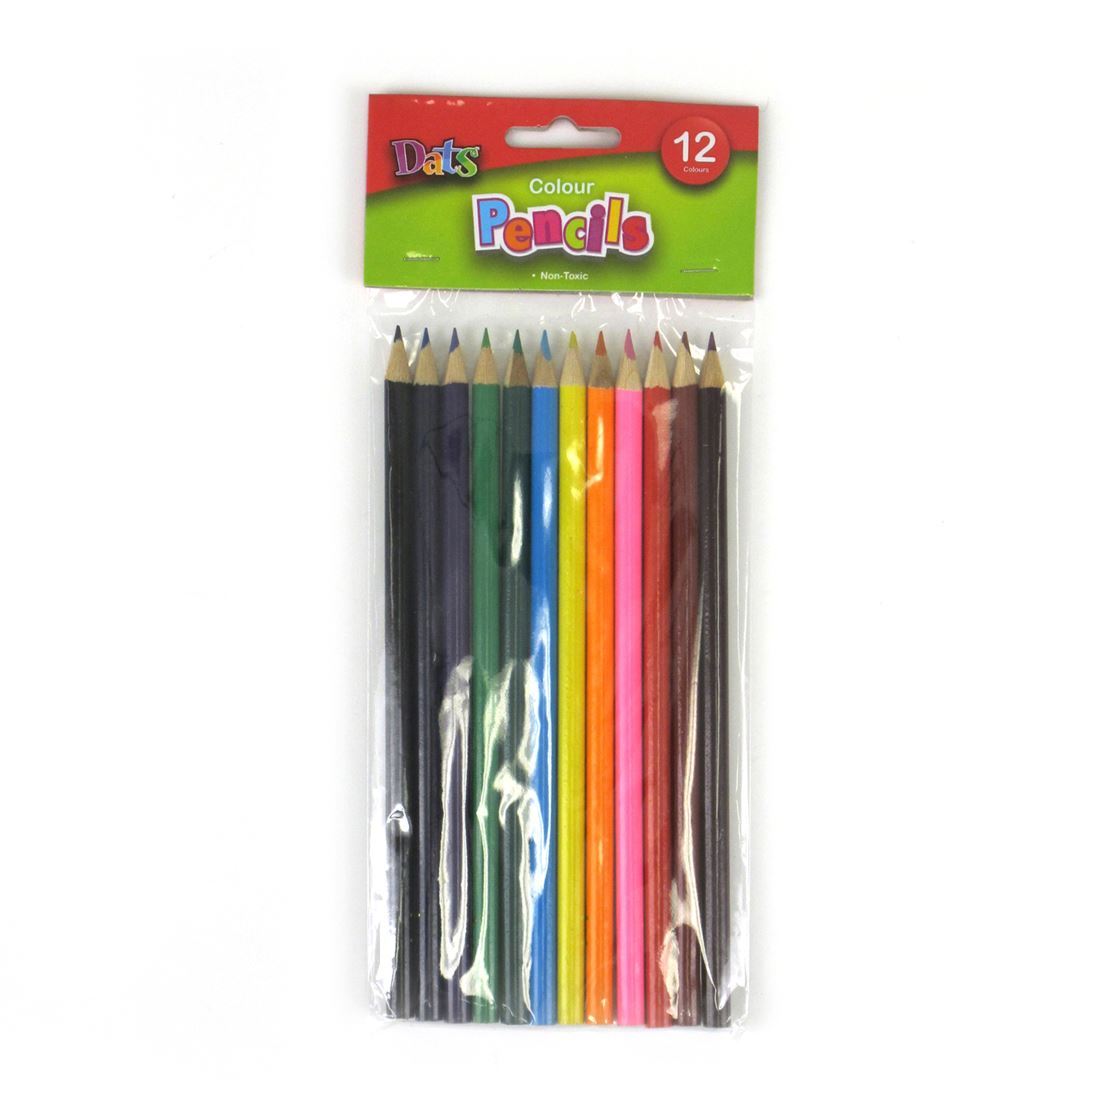 Dats Colour Pencils 12 Pack- main image